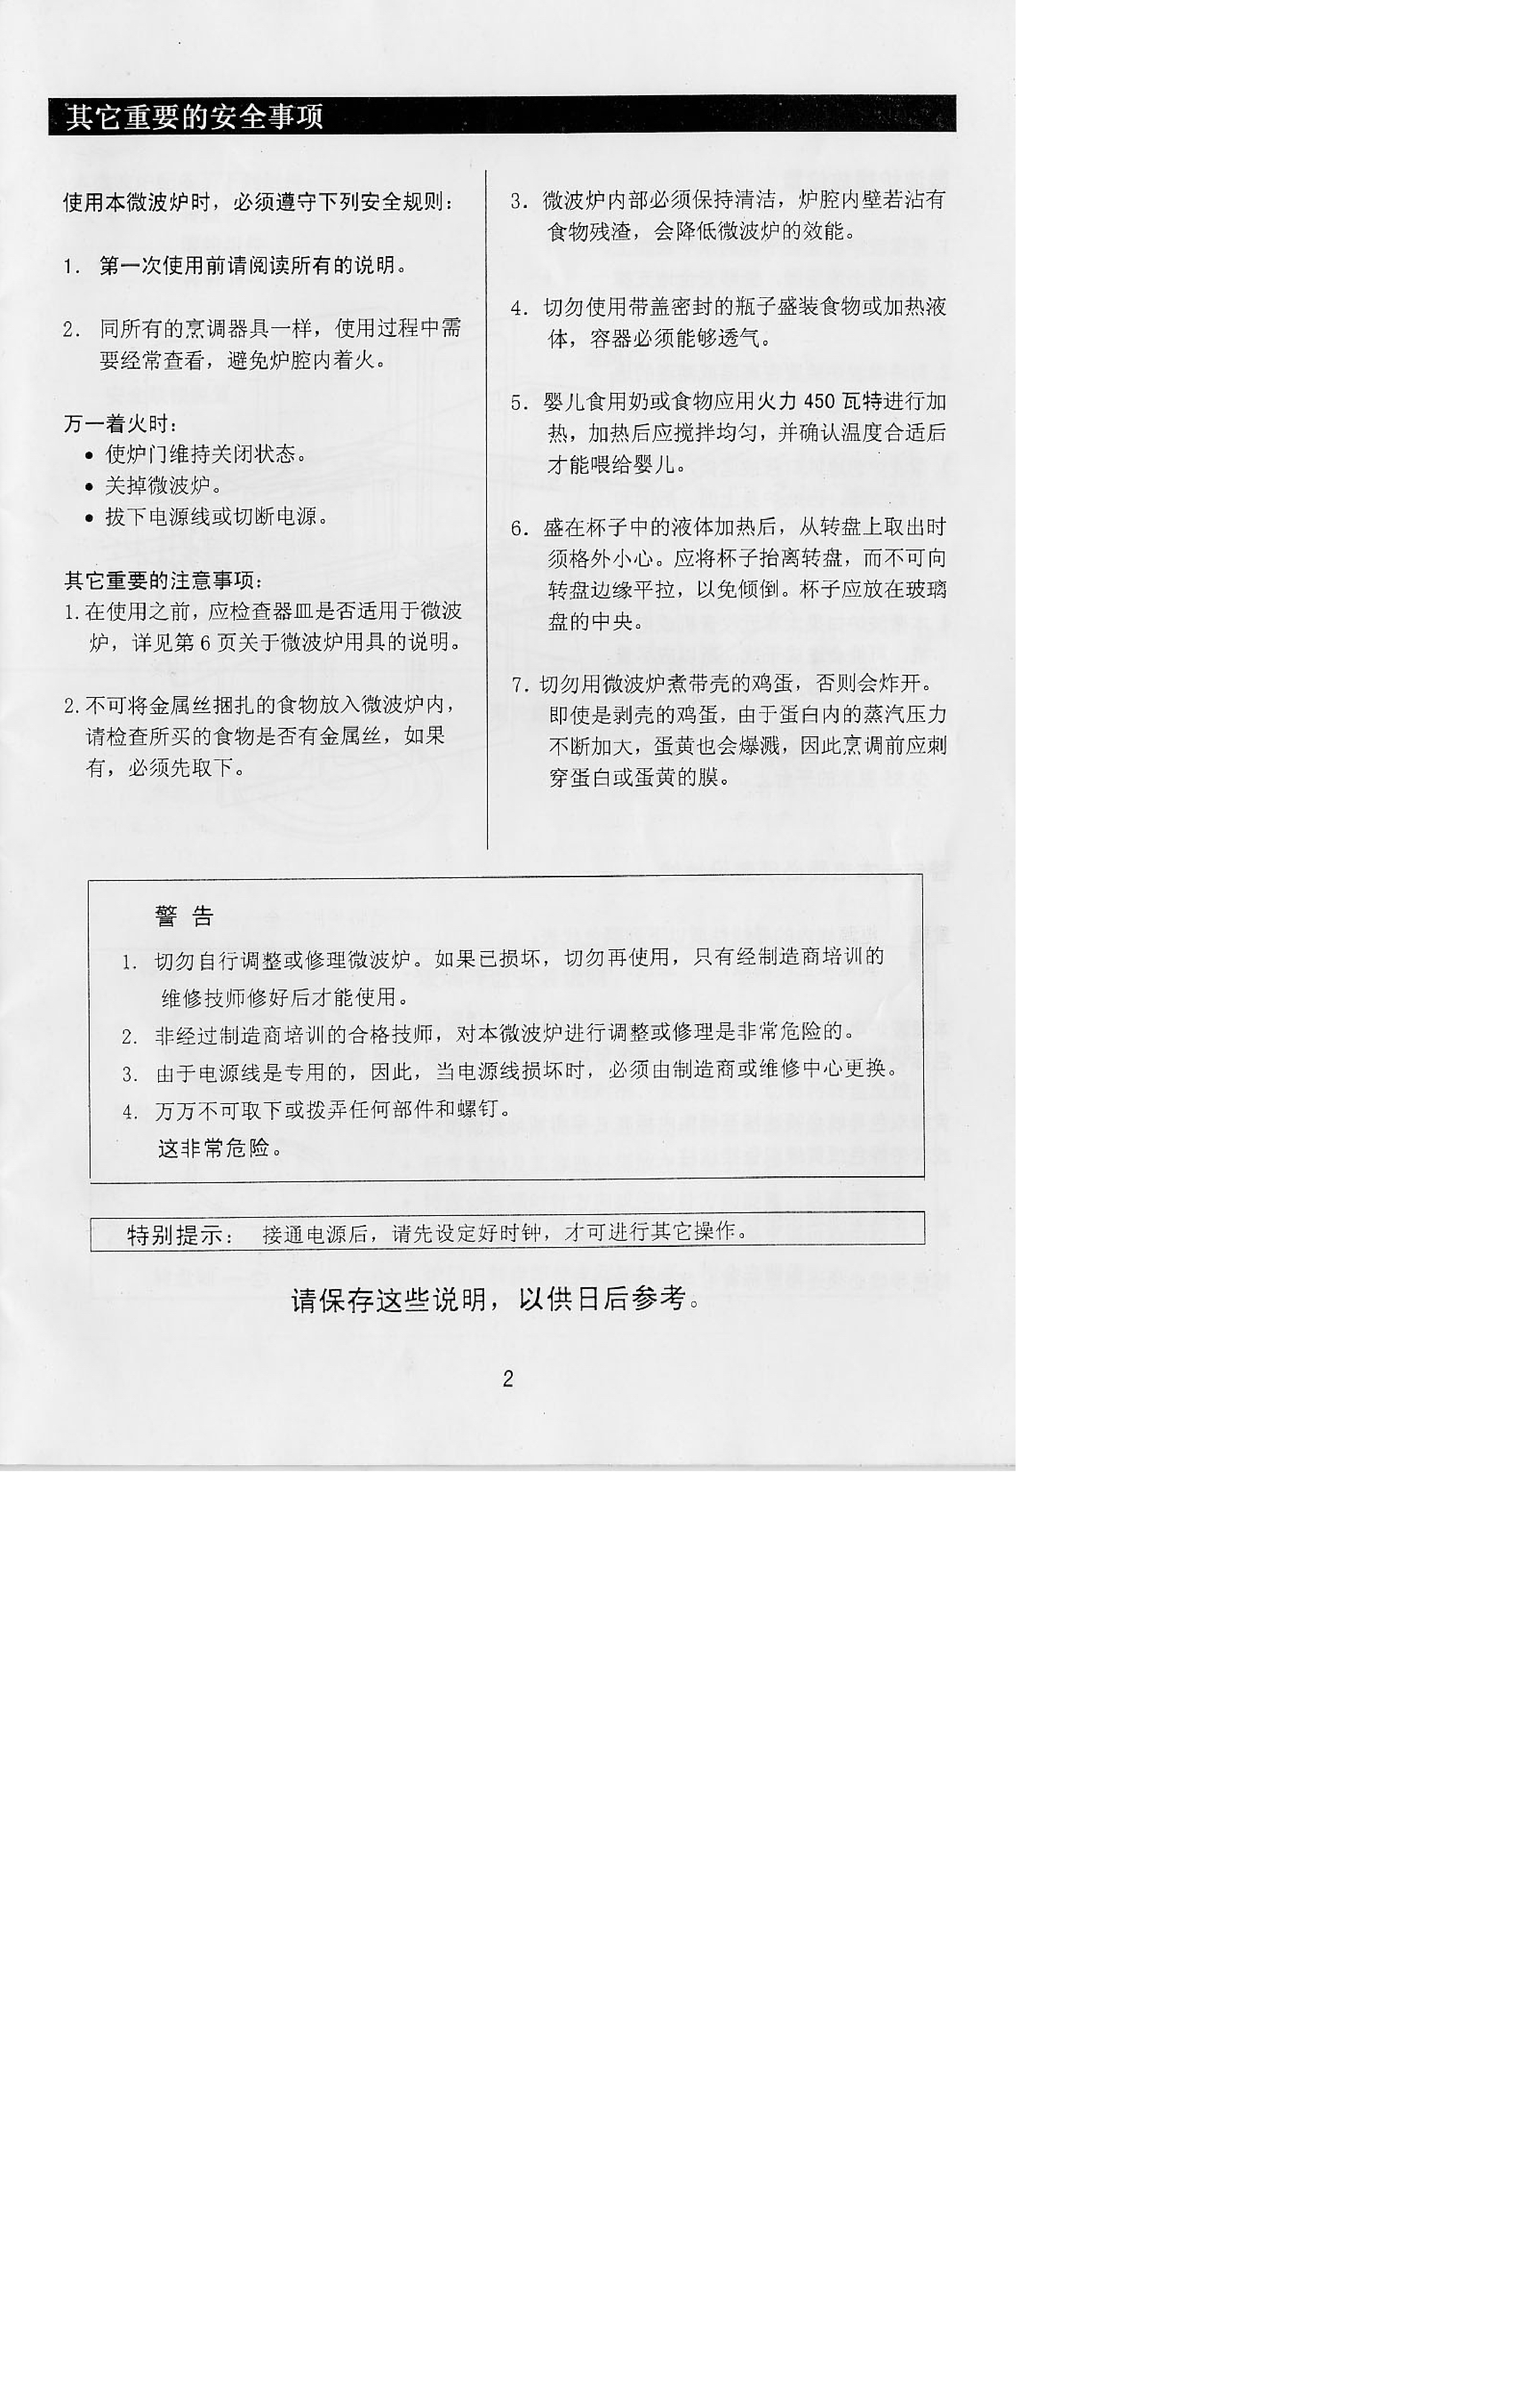 三洋 Sanyo EM-350S 说明书 第2页